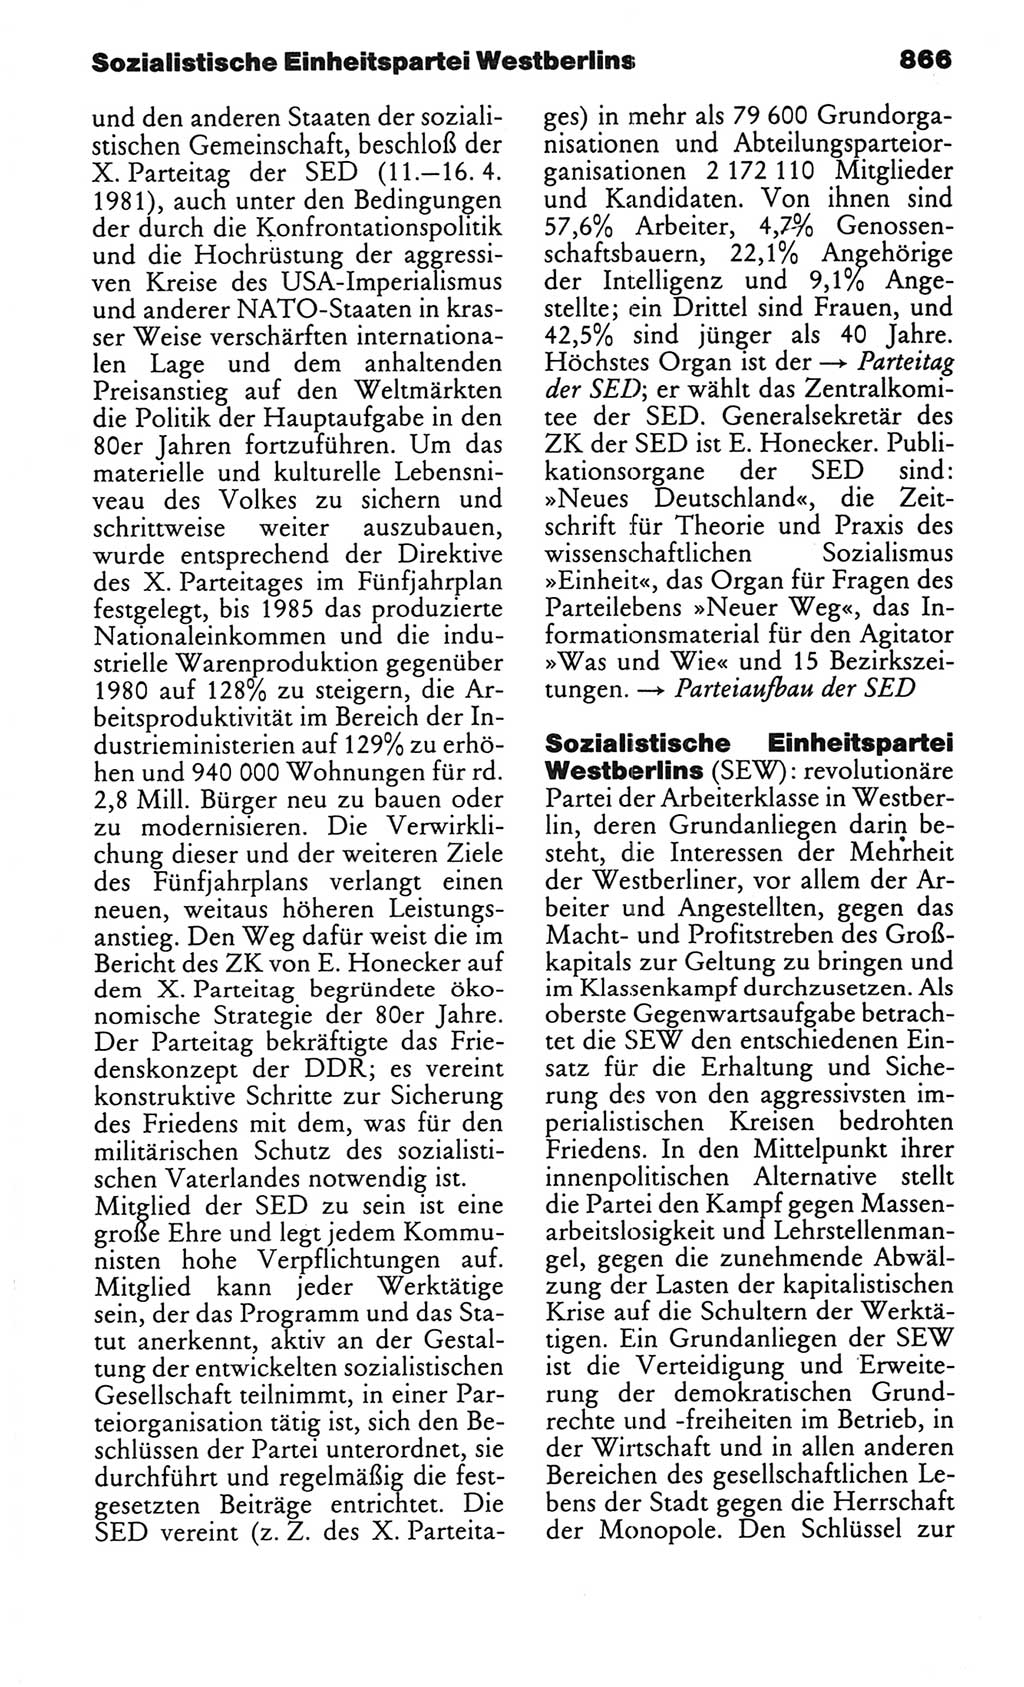 Kleines politisches Wörterbuch [Deutsche Demokratische Republik (DDR)] 1986, Seite 866 (Kl. pol. Wb. DDR 1986, S. 866)